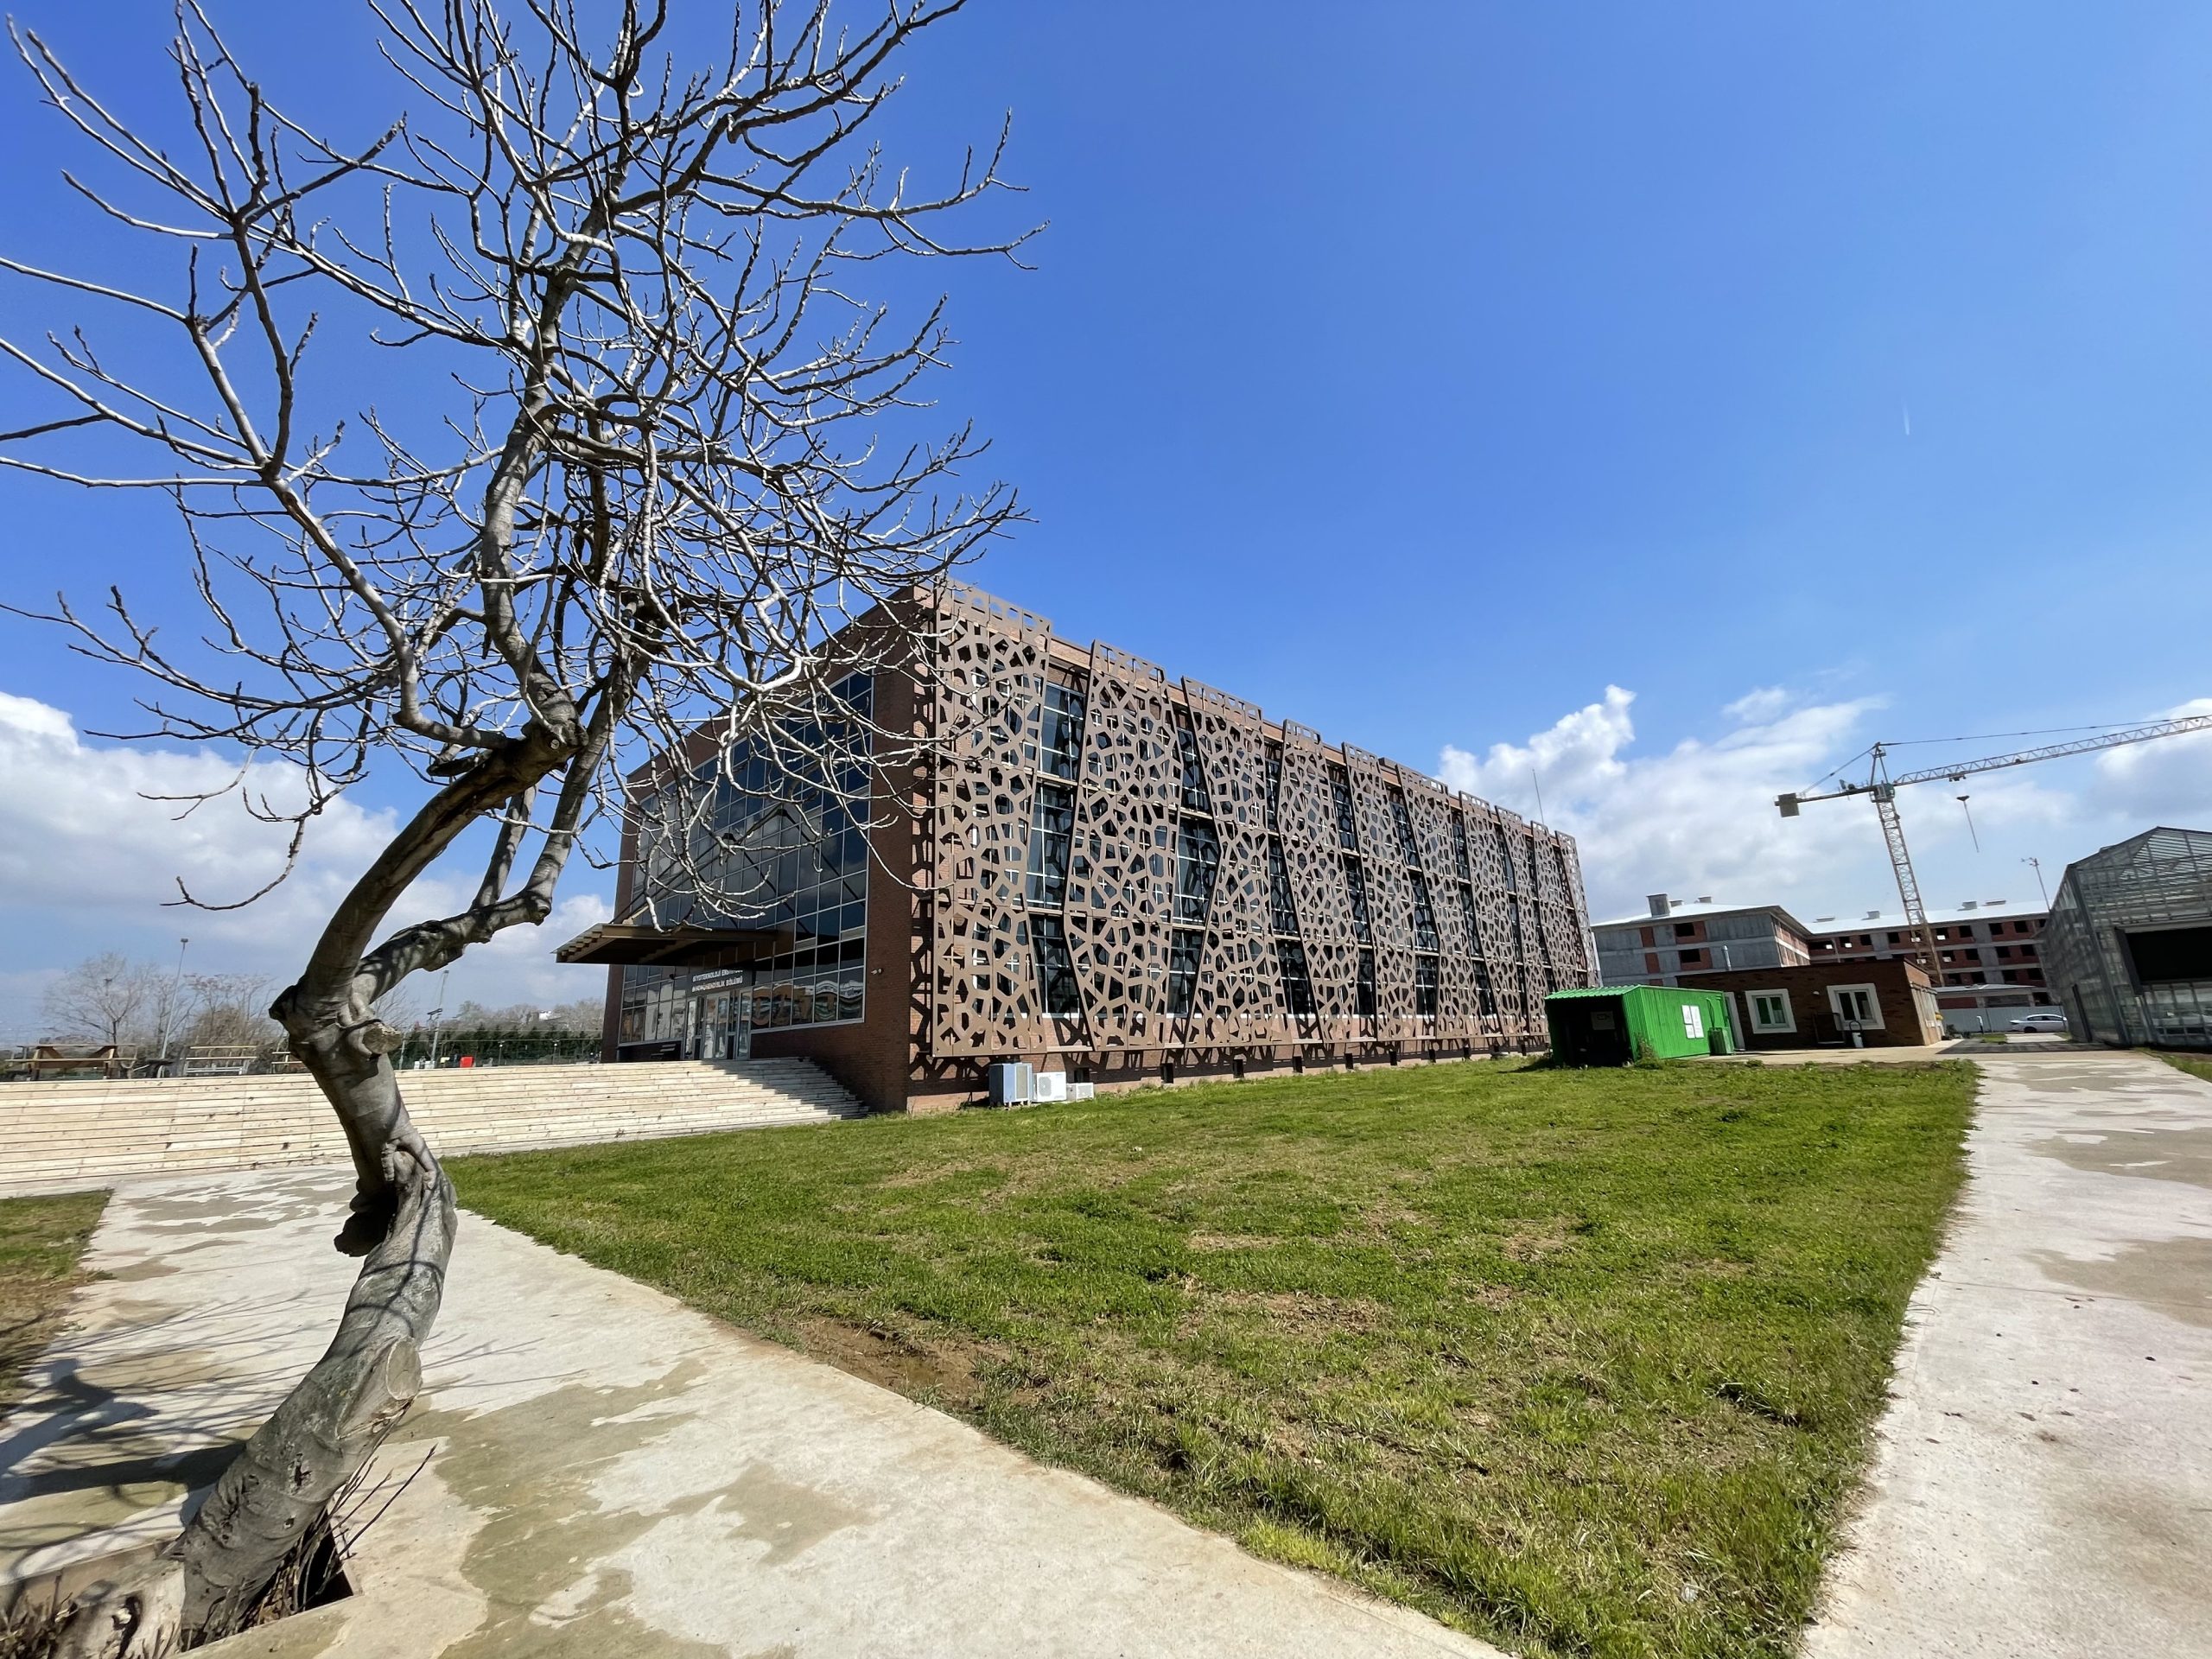 Procon_Dogumet_Gebze Teknik Üniversitesi Enstitü Binaları_ (24)